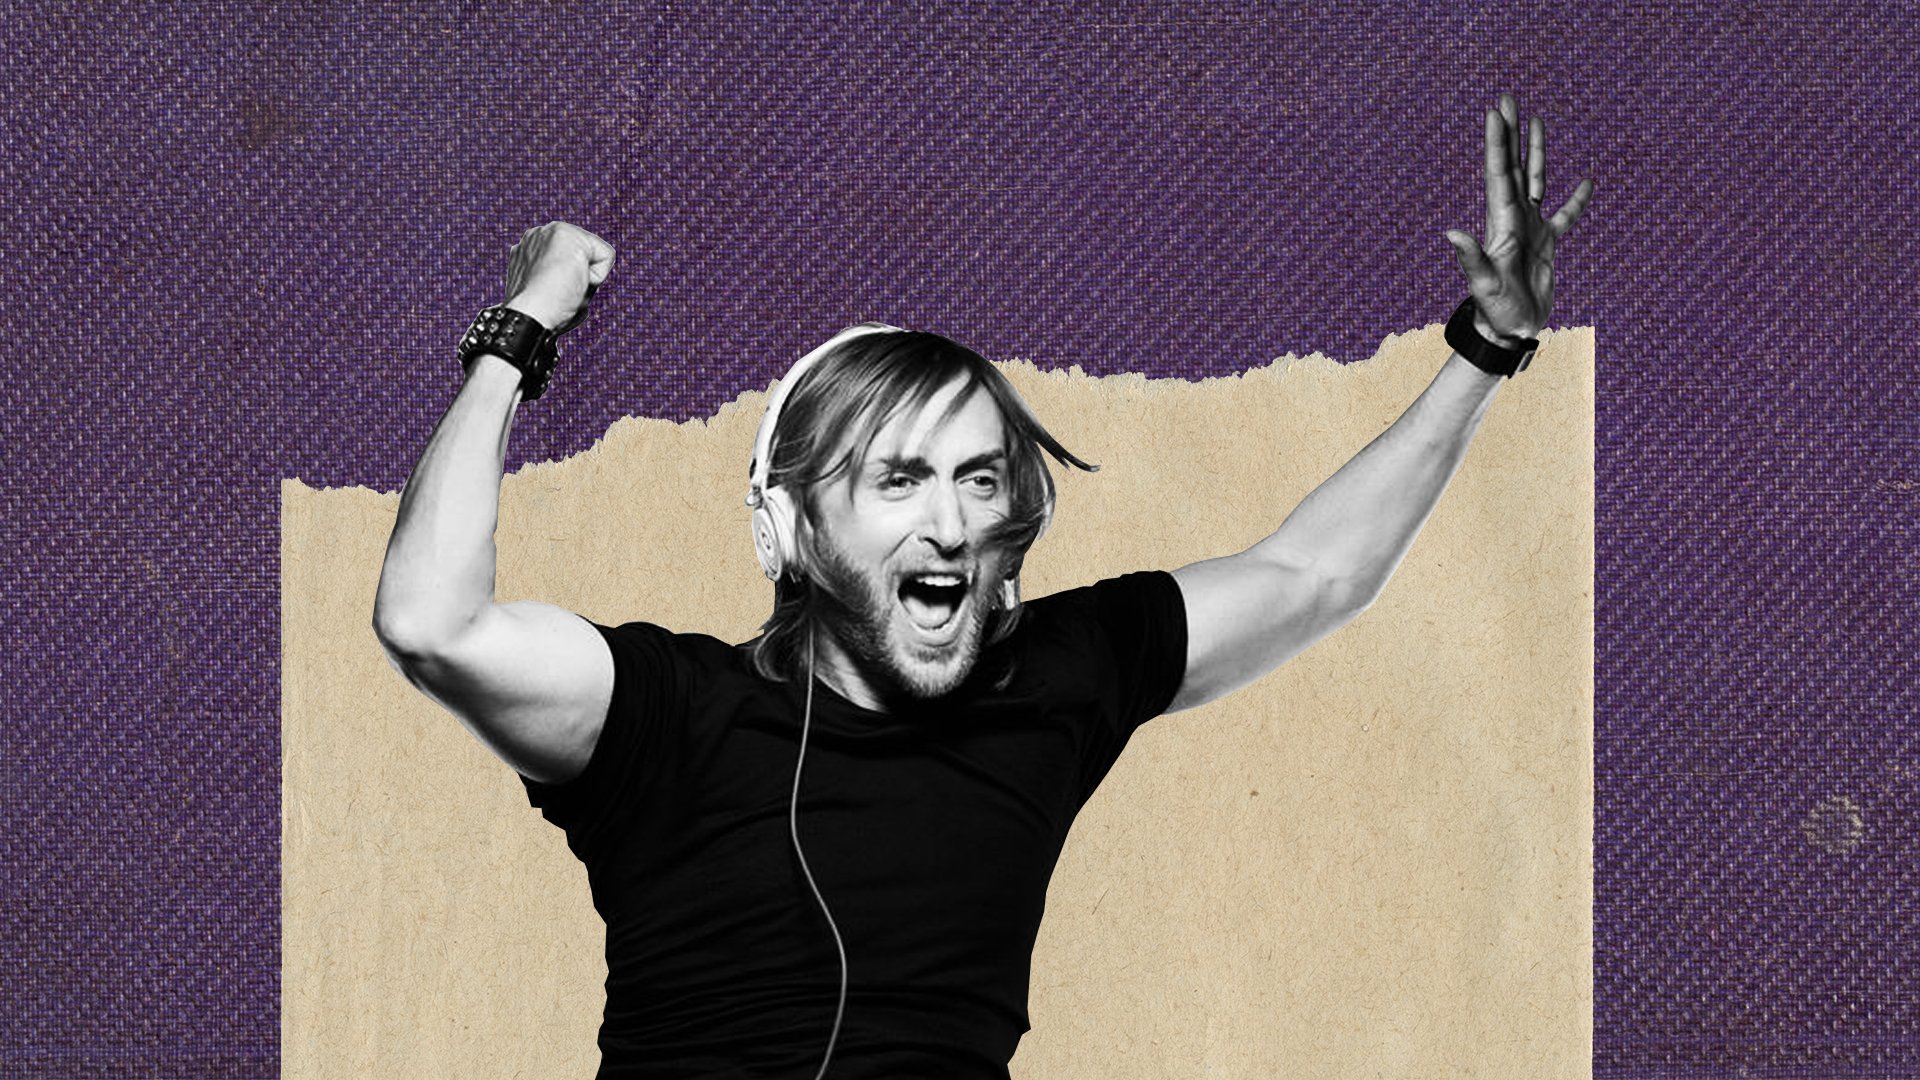 DJ David Guetta’s Miami Pad Is For Sale. The Price? 38 BTC